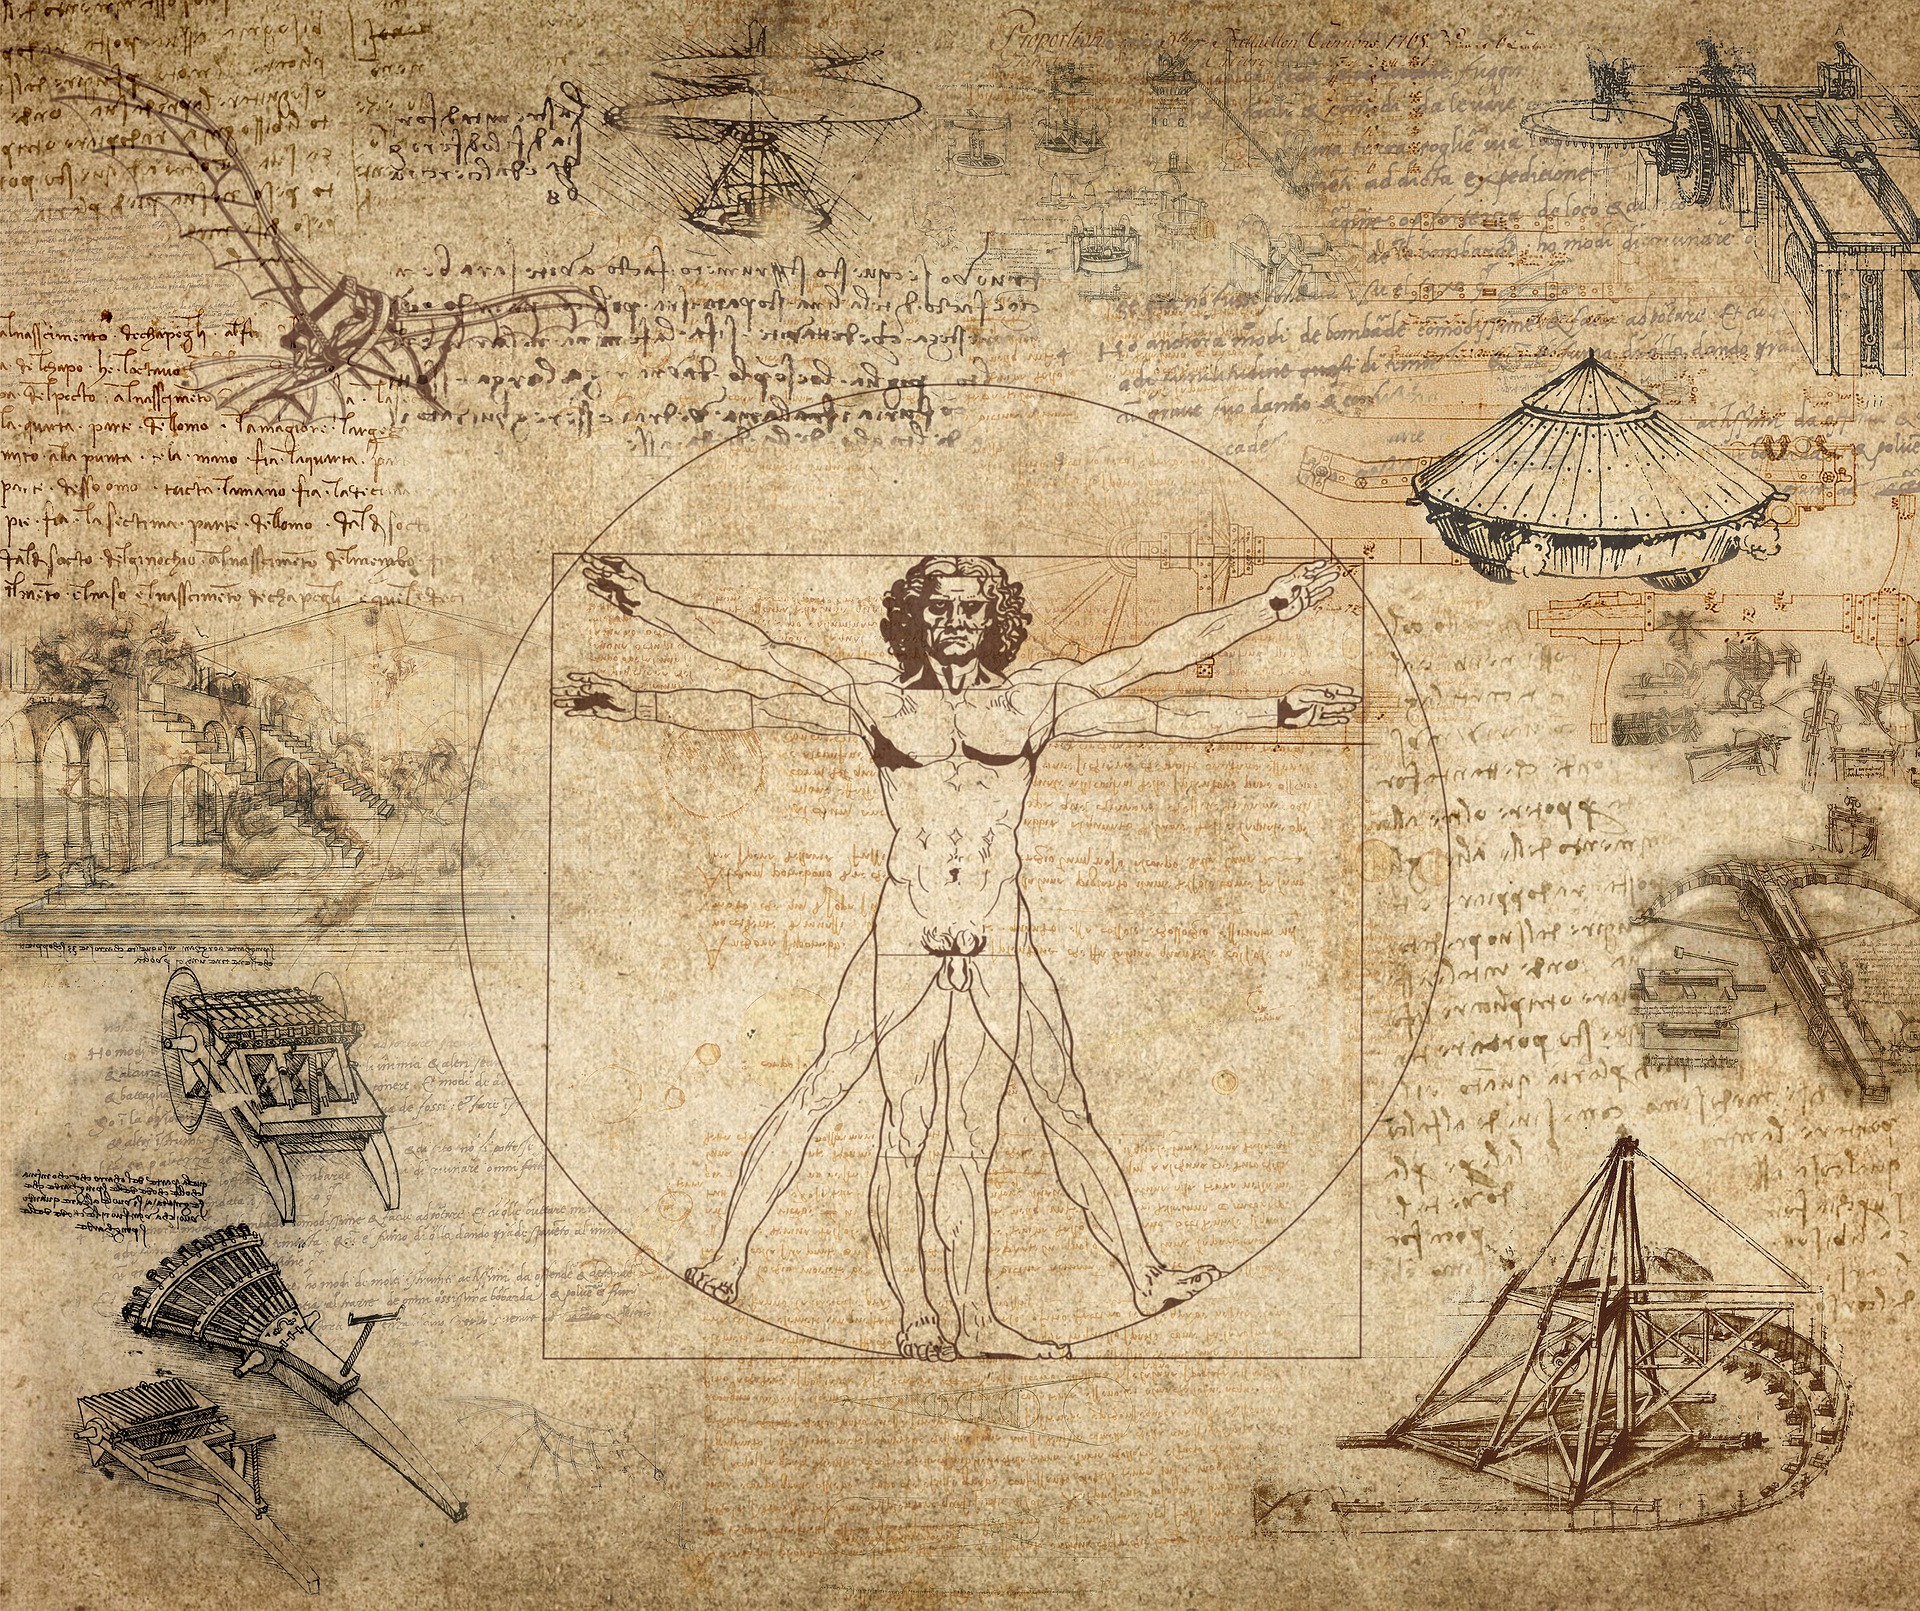 Le invenzioni di Leonardo da Vinci, testimonianze di un periodo straordinario (1a parte).